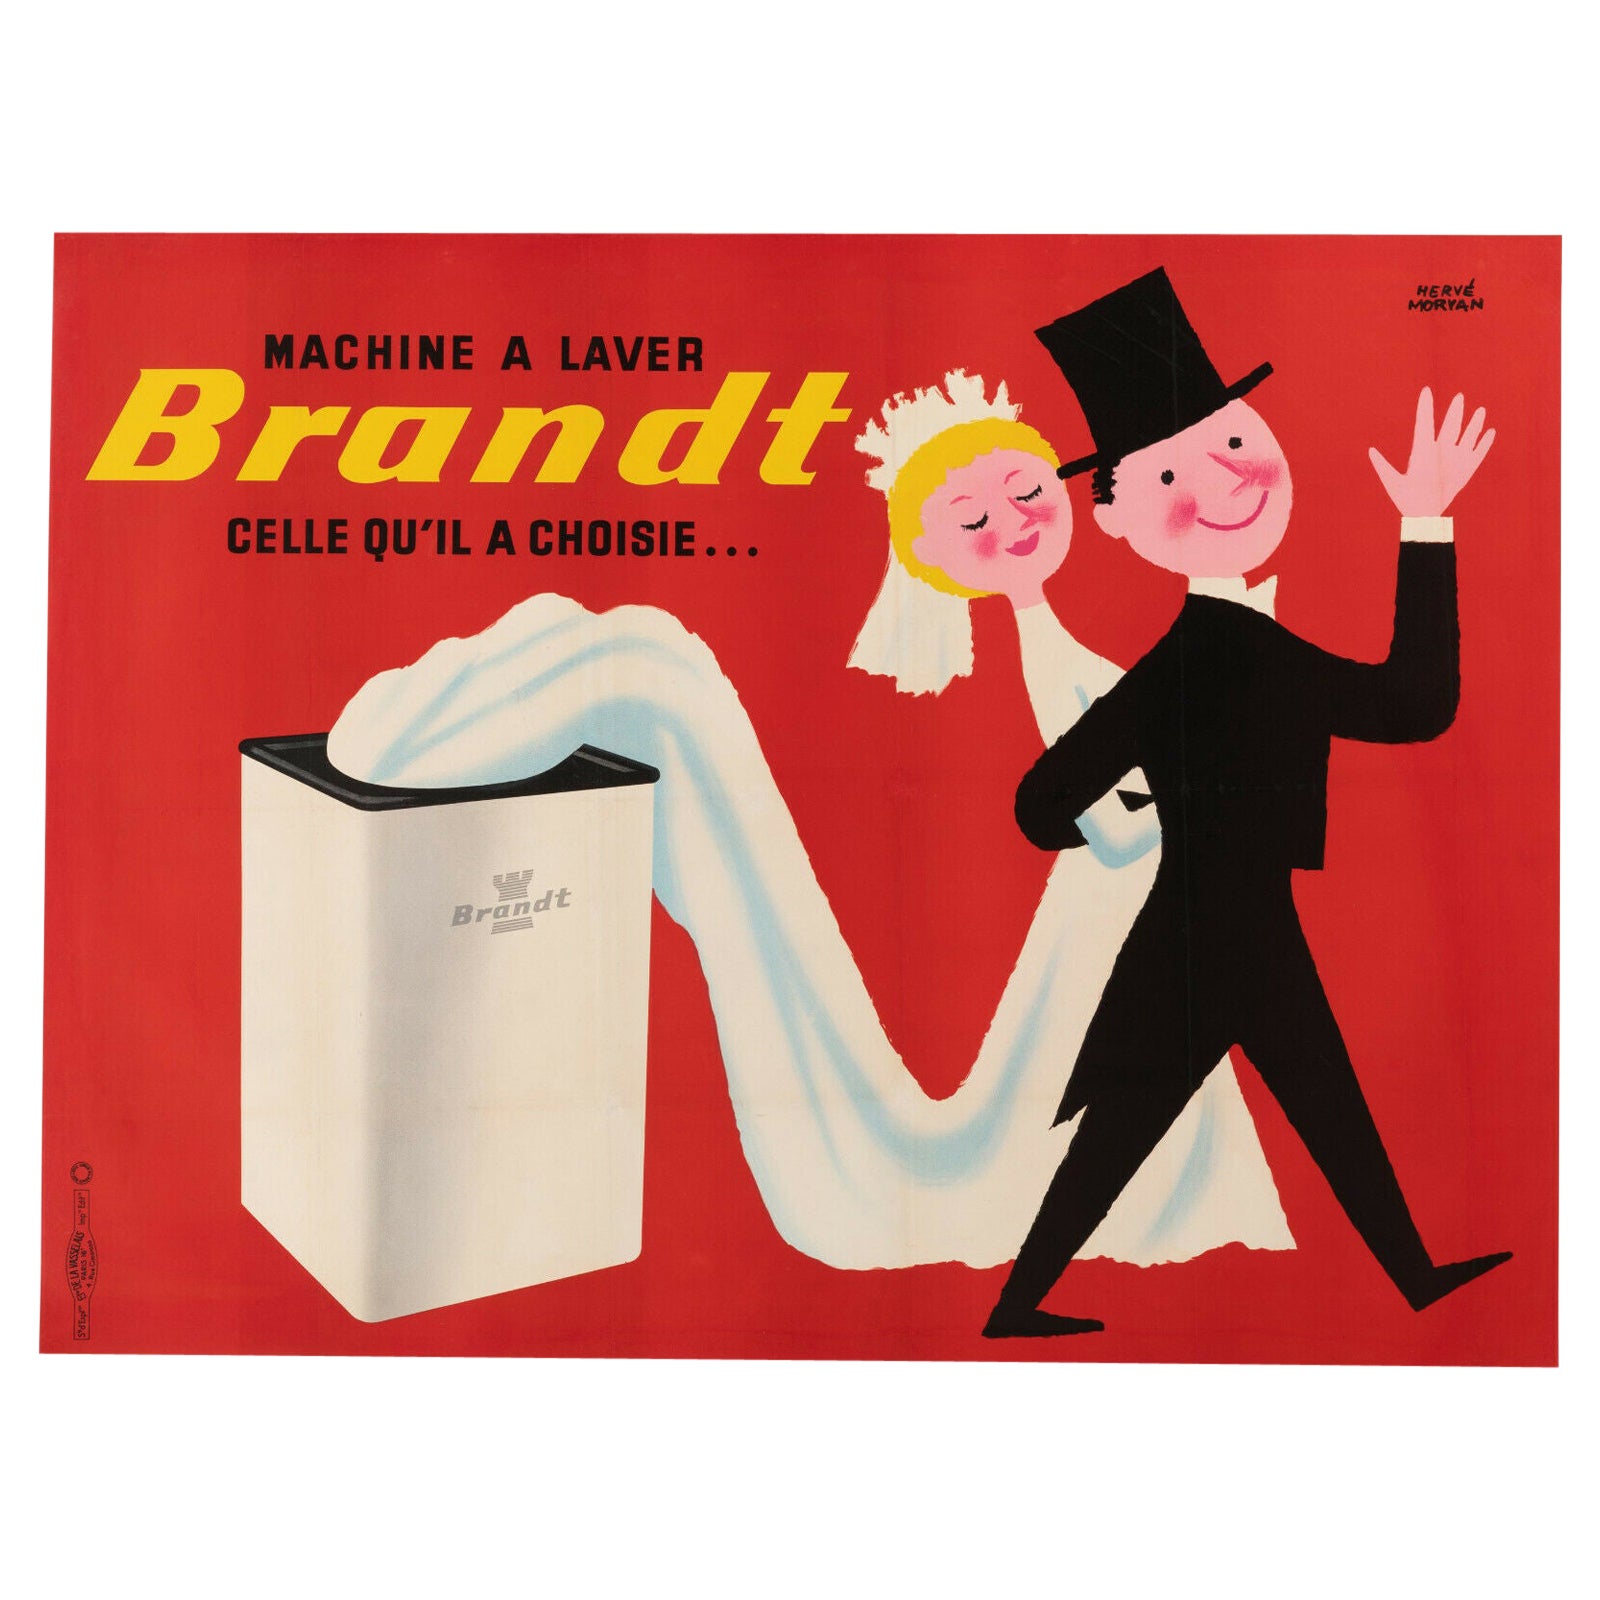 Original Vintage Poster-Herve Morvan-Brandt-Washing Machine-Marriage, c. 1955 For Sale